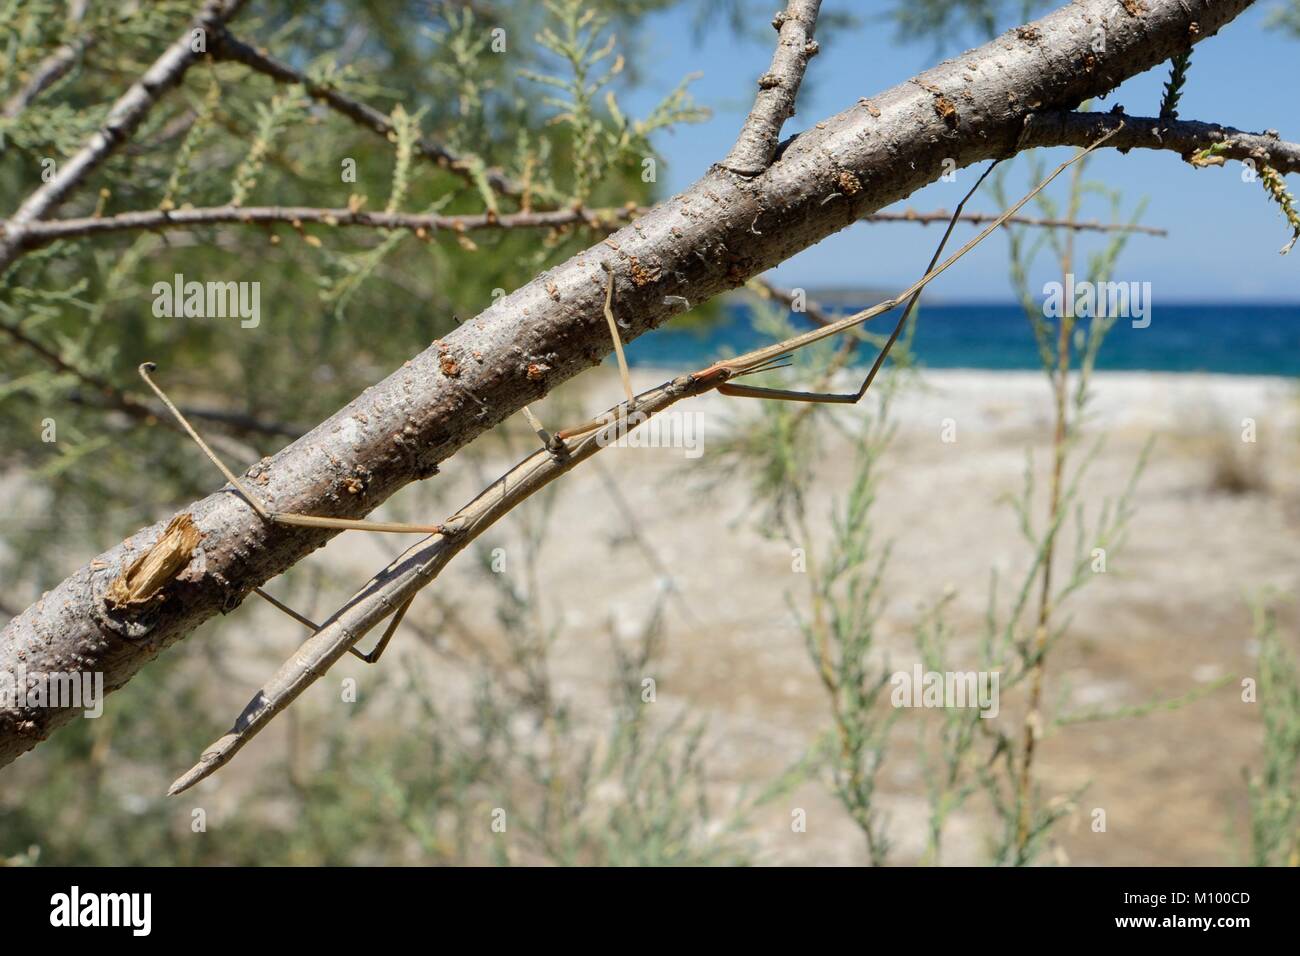 Insecto Palo (Bacillus atticus atticus) Griega de hábitats costeros en un árbol de Tamarisco (Tamarix sp.) que crecen detrás de la playa, cerca de astros, Grecia. Foto de stock